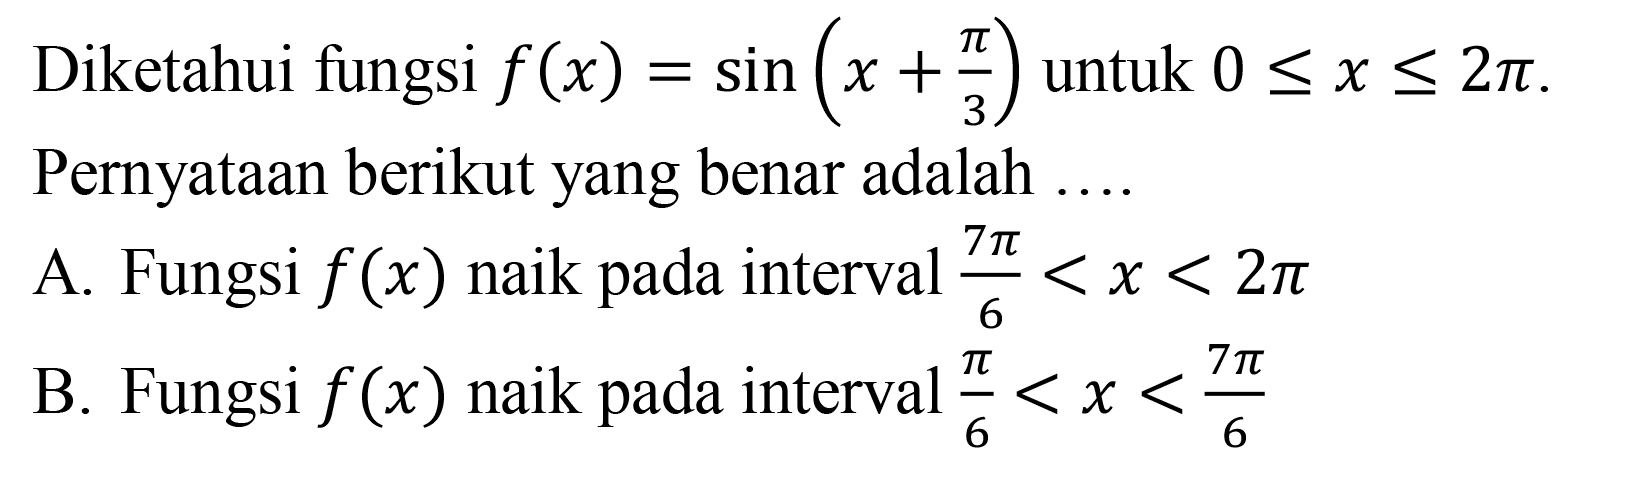 Diketahui fungsi f(x)-sin(x+pi/3) untuk 0<=x<=2pi. Pernyataan berikut yang benar adalah ... A. Fungsi f(x) naik pada interval 7pi/6<x<2pi B. Fungsi f (x) naik pada interval pi/6<x<7pi/6